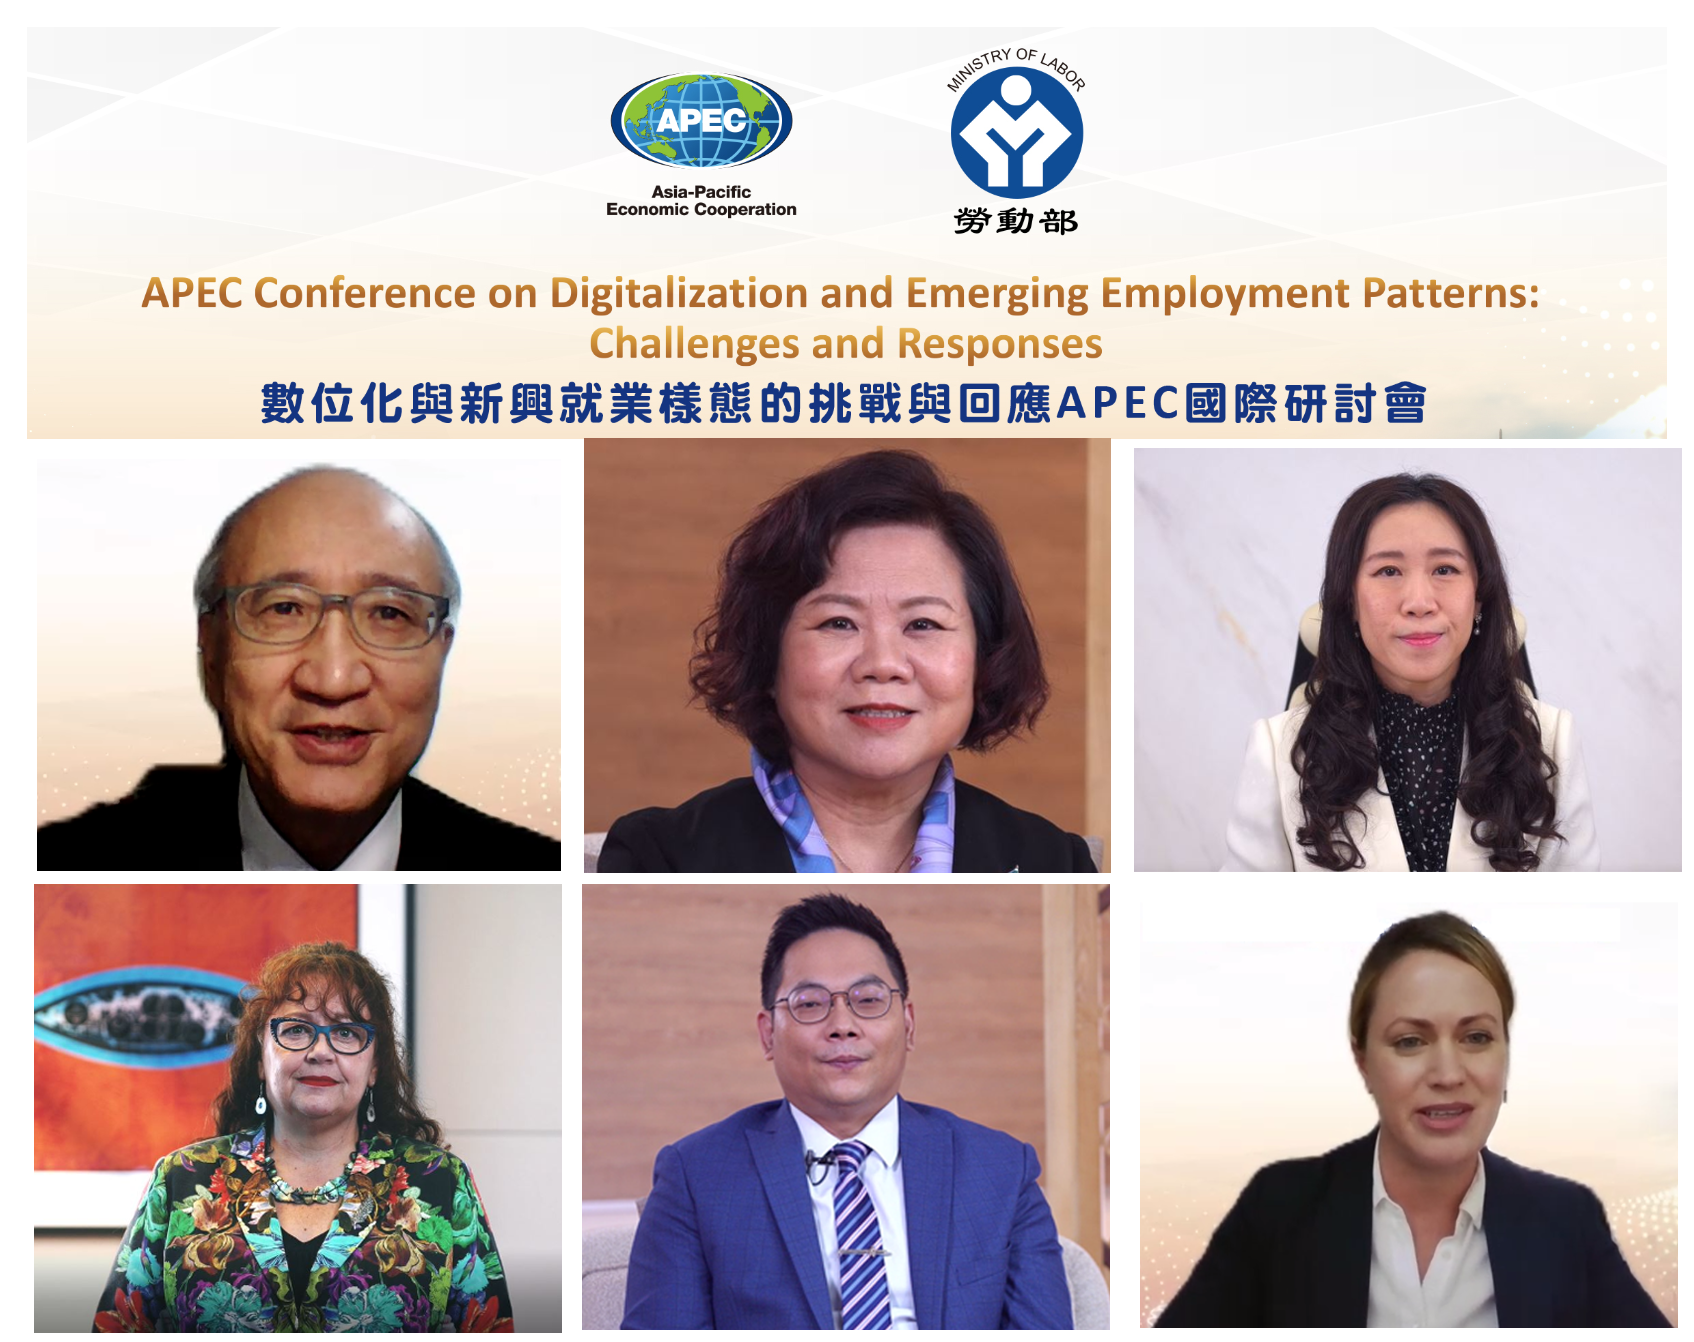 「數位化與新興就業樣態的挑戰與回應」APEC國際研討會 展示圖